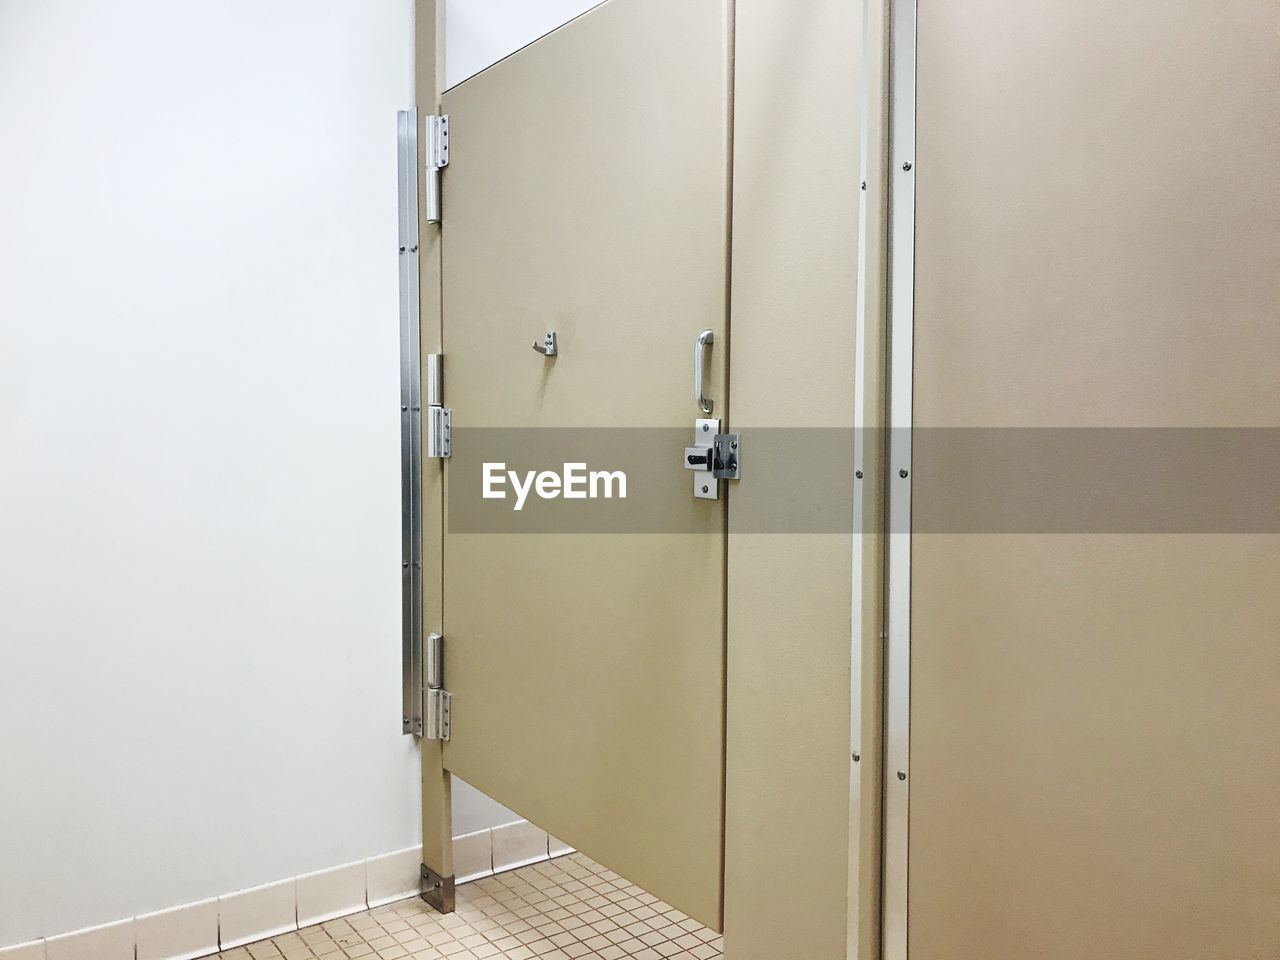 Public restroom stall door